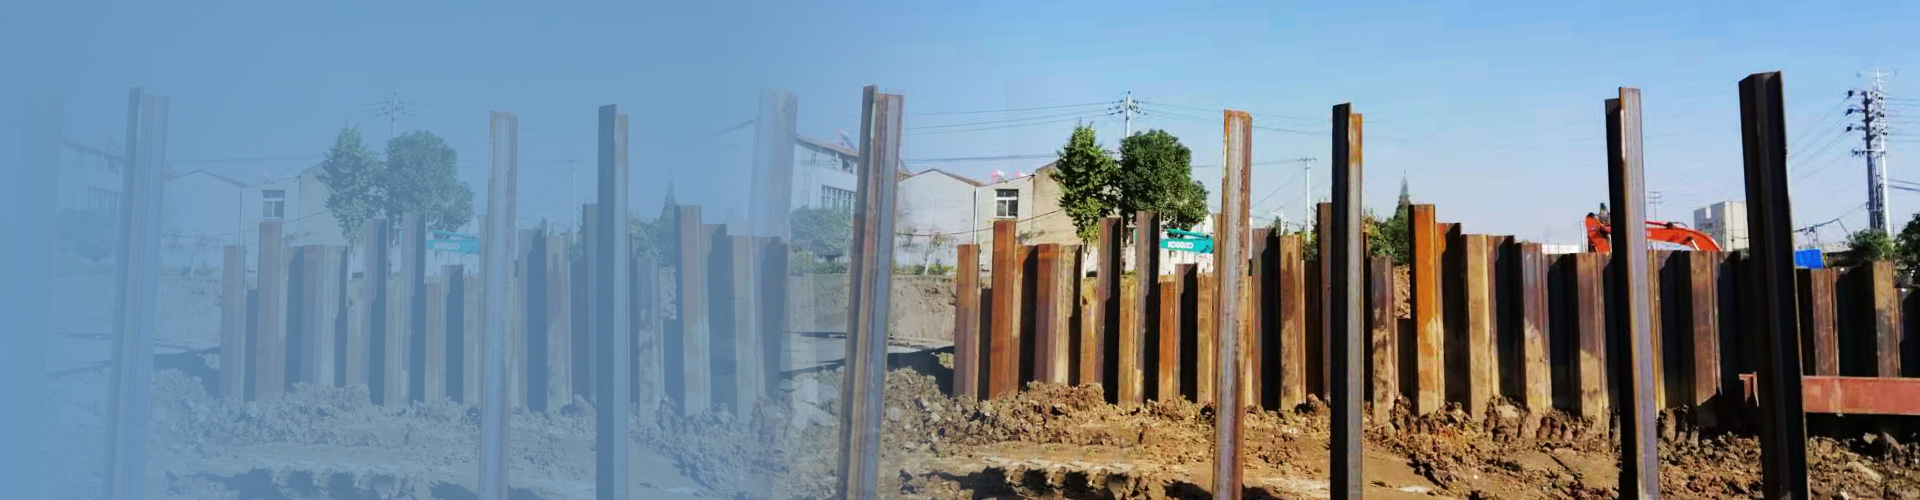 管网建设施工中钢板桩基础工程施工过程如何避免基坑裂缝